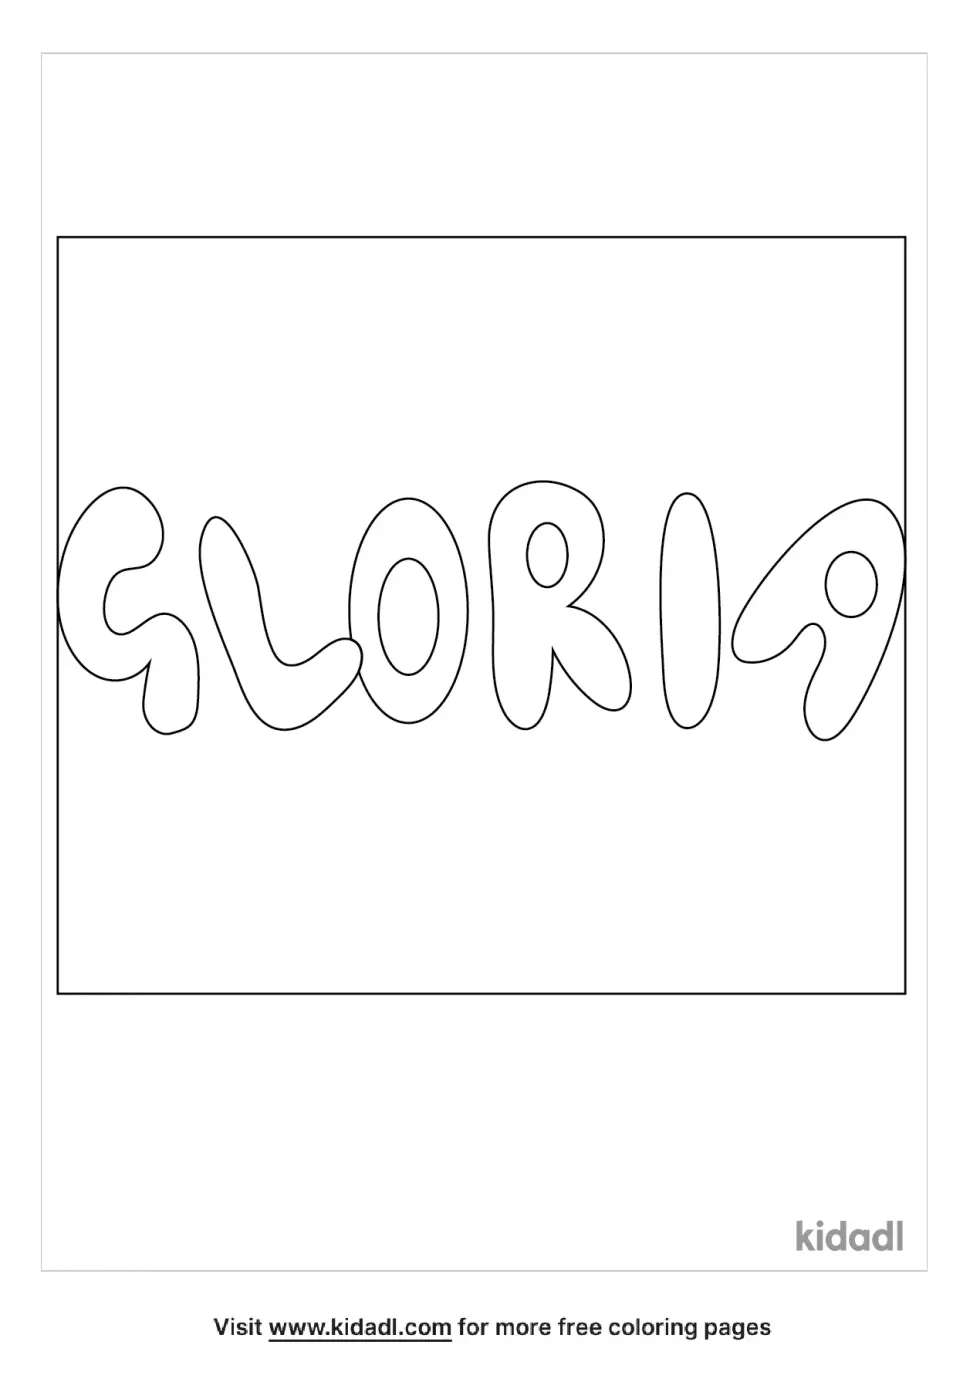 Name Gloria